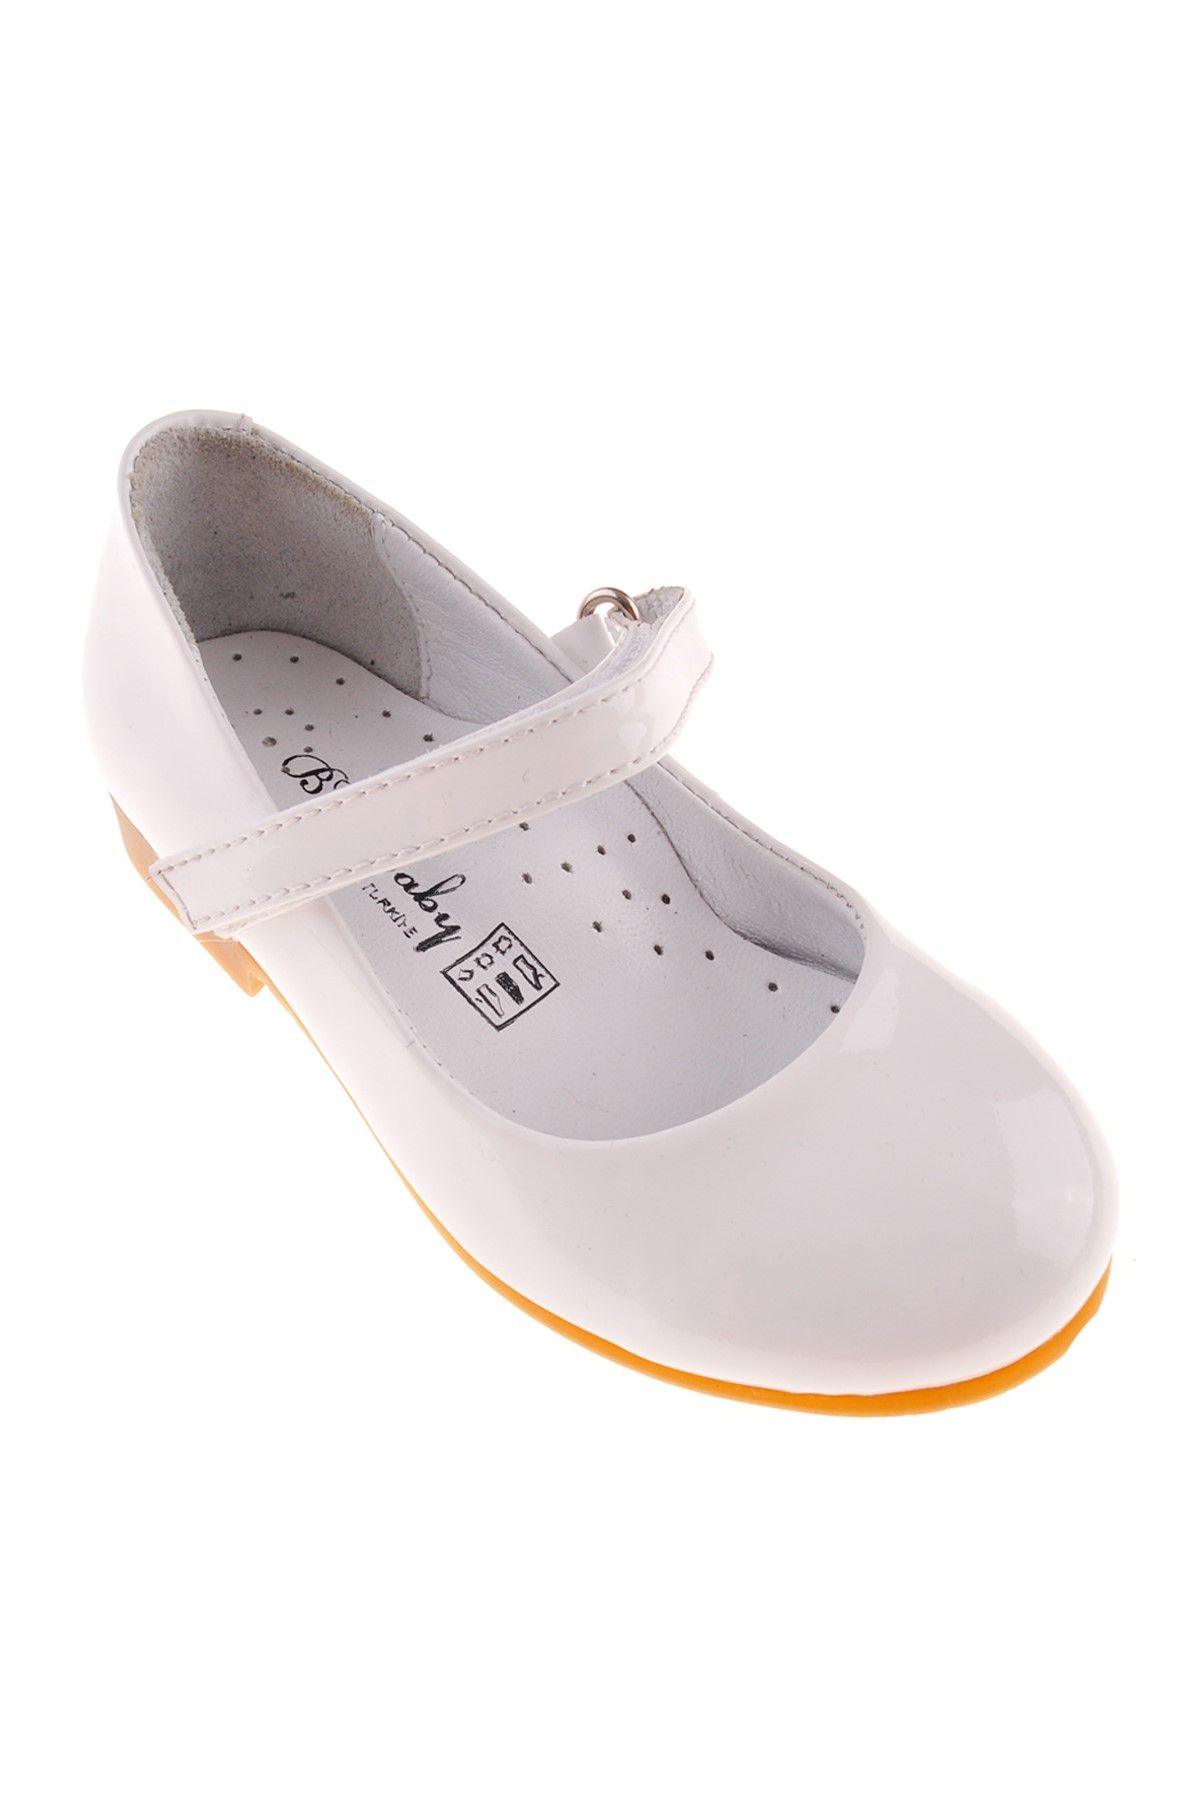 BG Baby Beyaz Kız Bebek Ayakkabı 3838Bbg2053